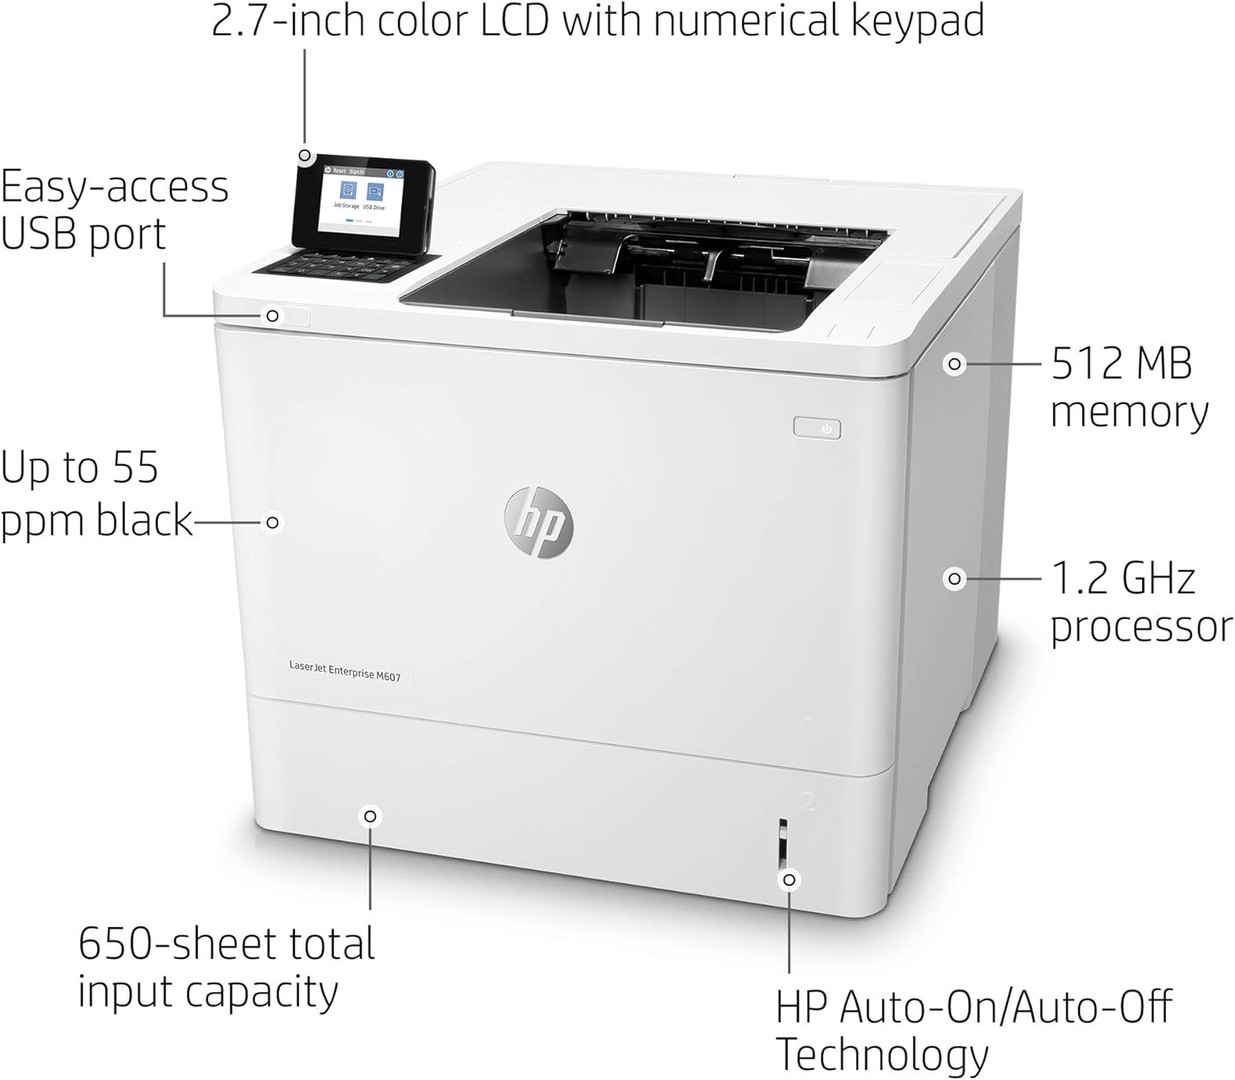 impresoras y scanners - Impresora HP LaserJet Enterprise M607n monocromática con Ethernet incorporado 1